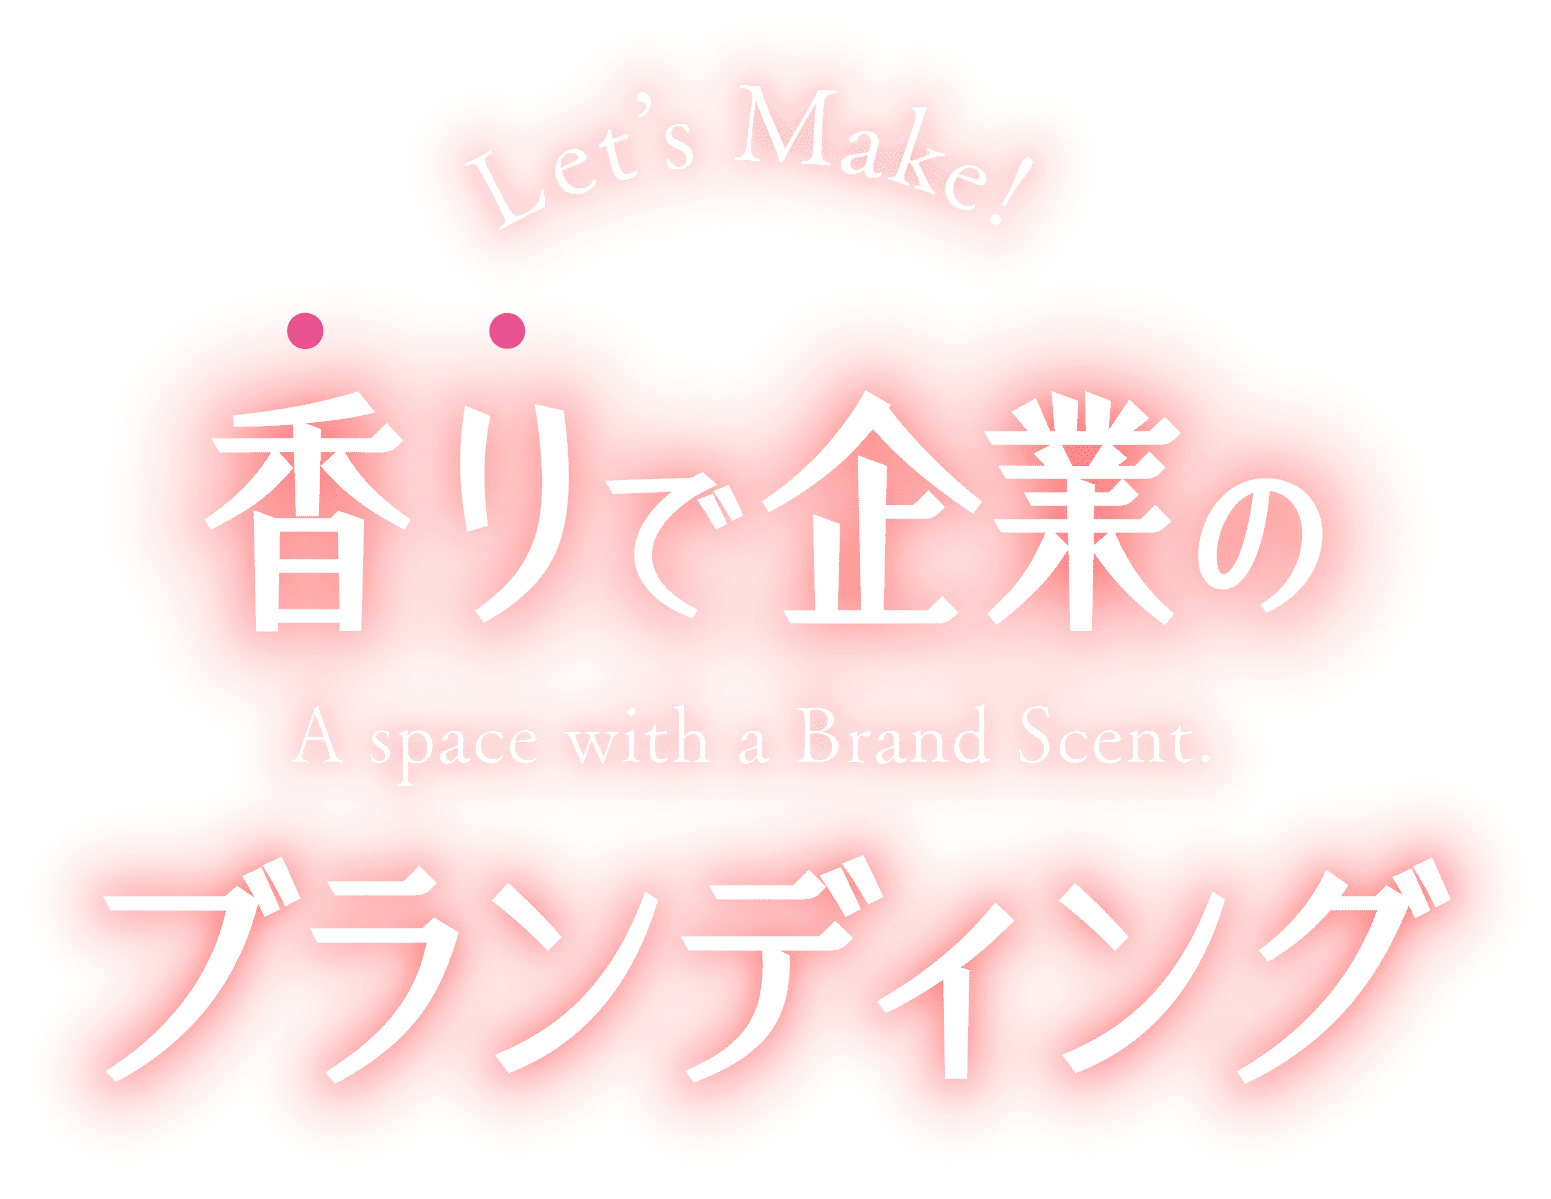 香りで企業のブランディング/Let's Make! A space with a Brand Scent.